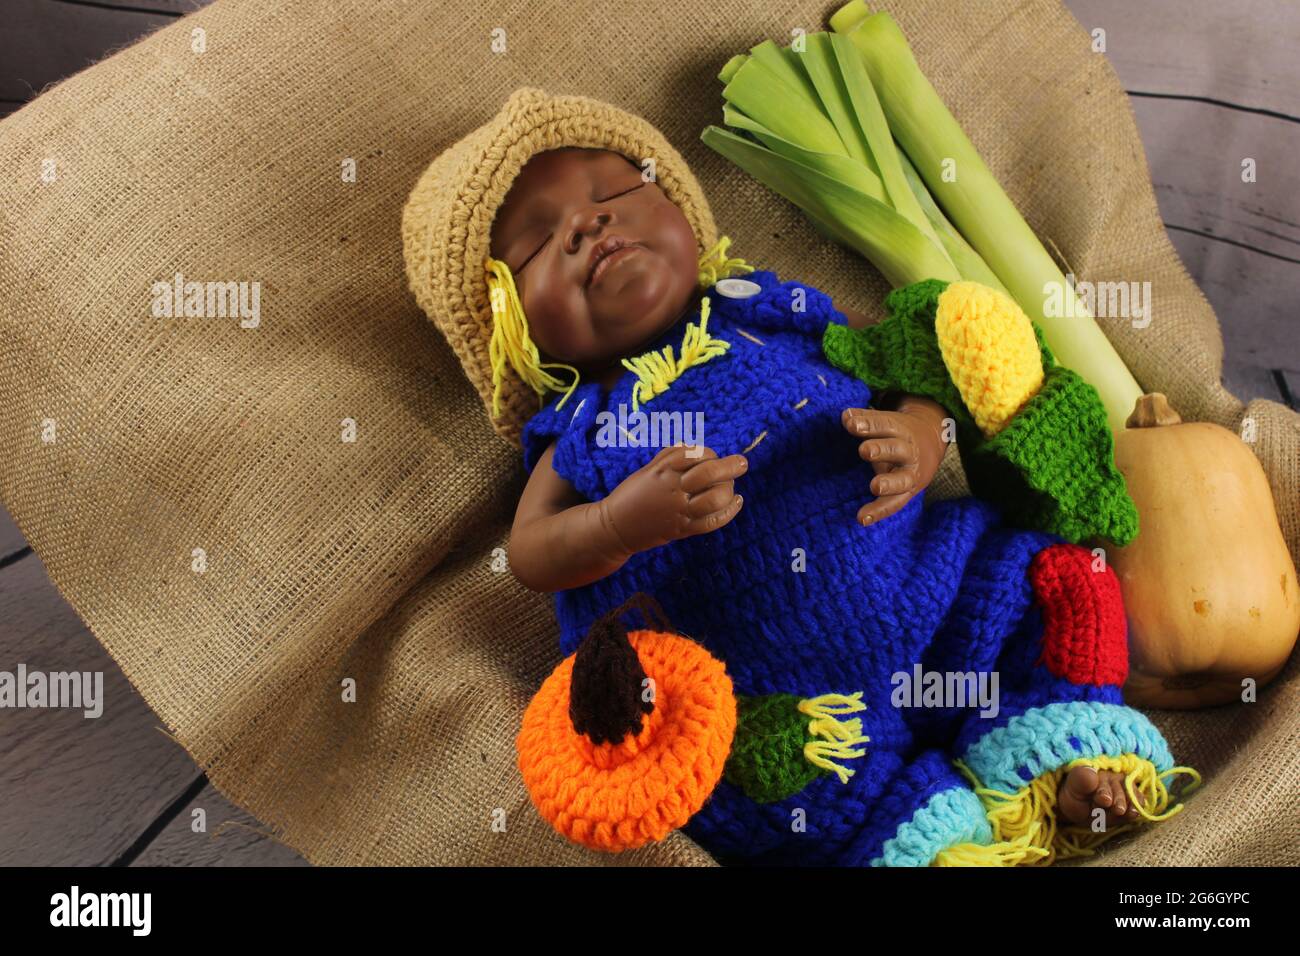 Afroamerikanisches Baby in blauen Latzhose, umgeben von Herbstgemüse.  Harvest Festival-Konzept, vertreten durch eine wiedergeborene Puppe  Stockfotografie - Alamy